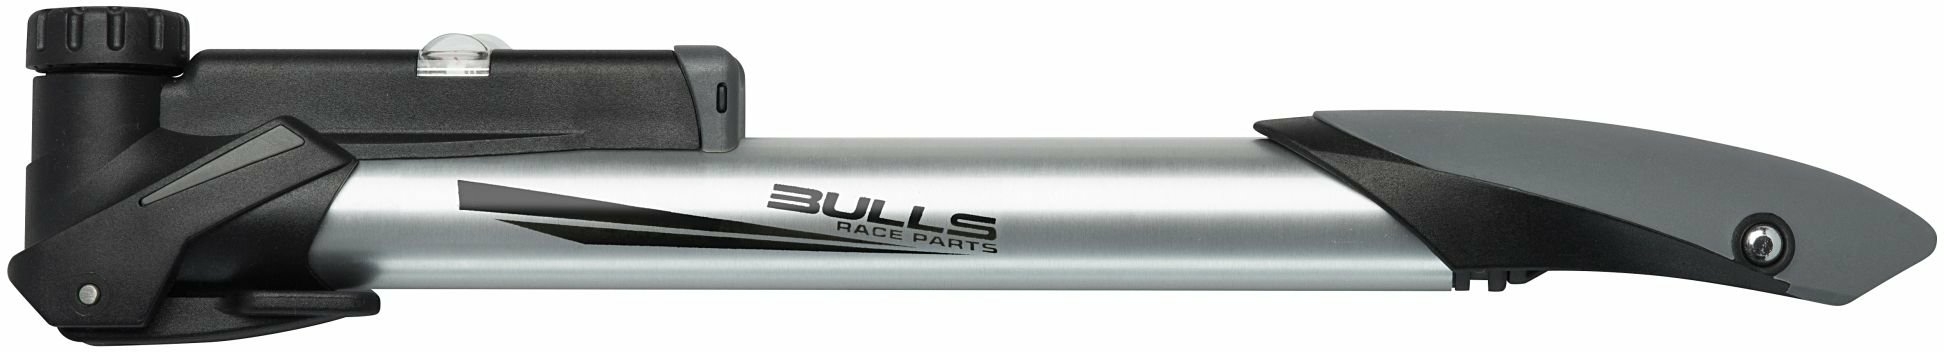 minipumpen/Pumpen: Bulls BULLS Minipumpe Caliber 6 